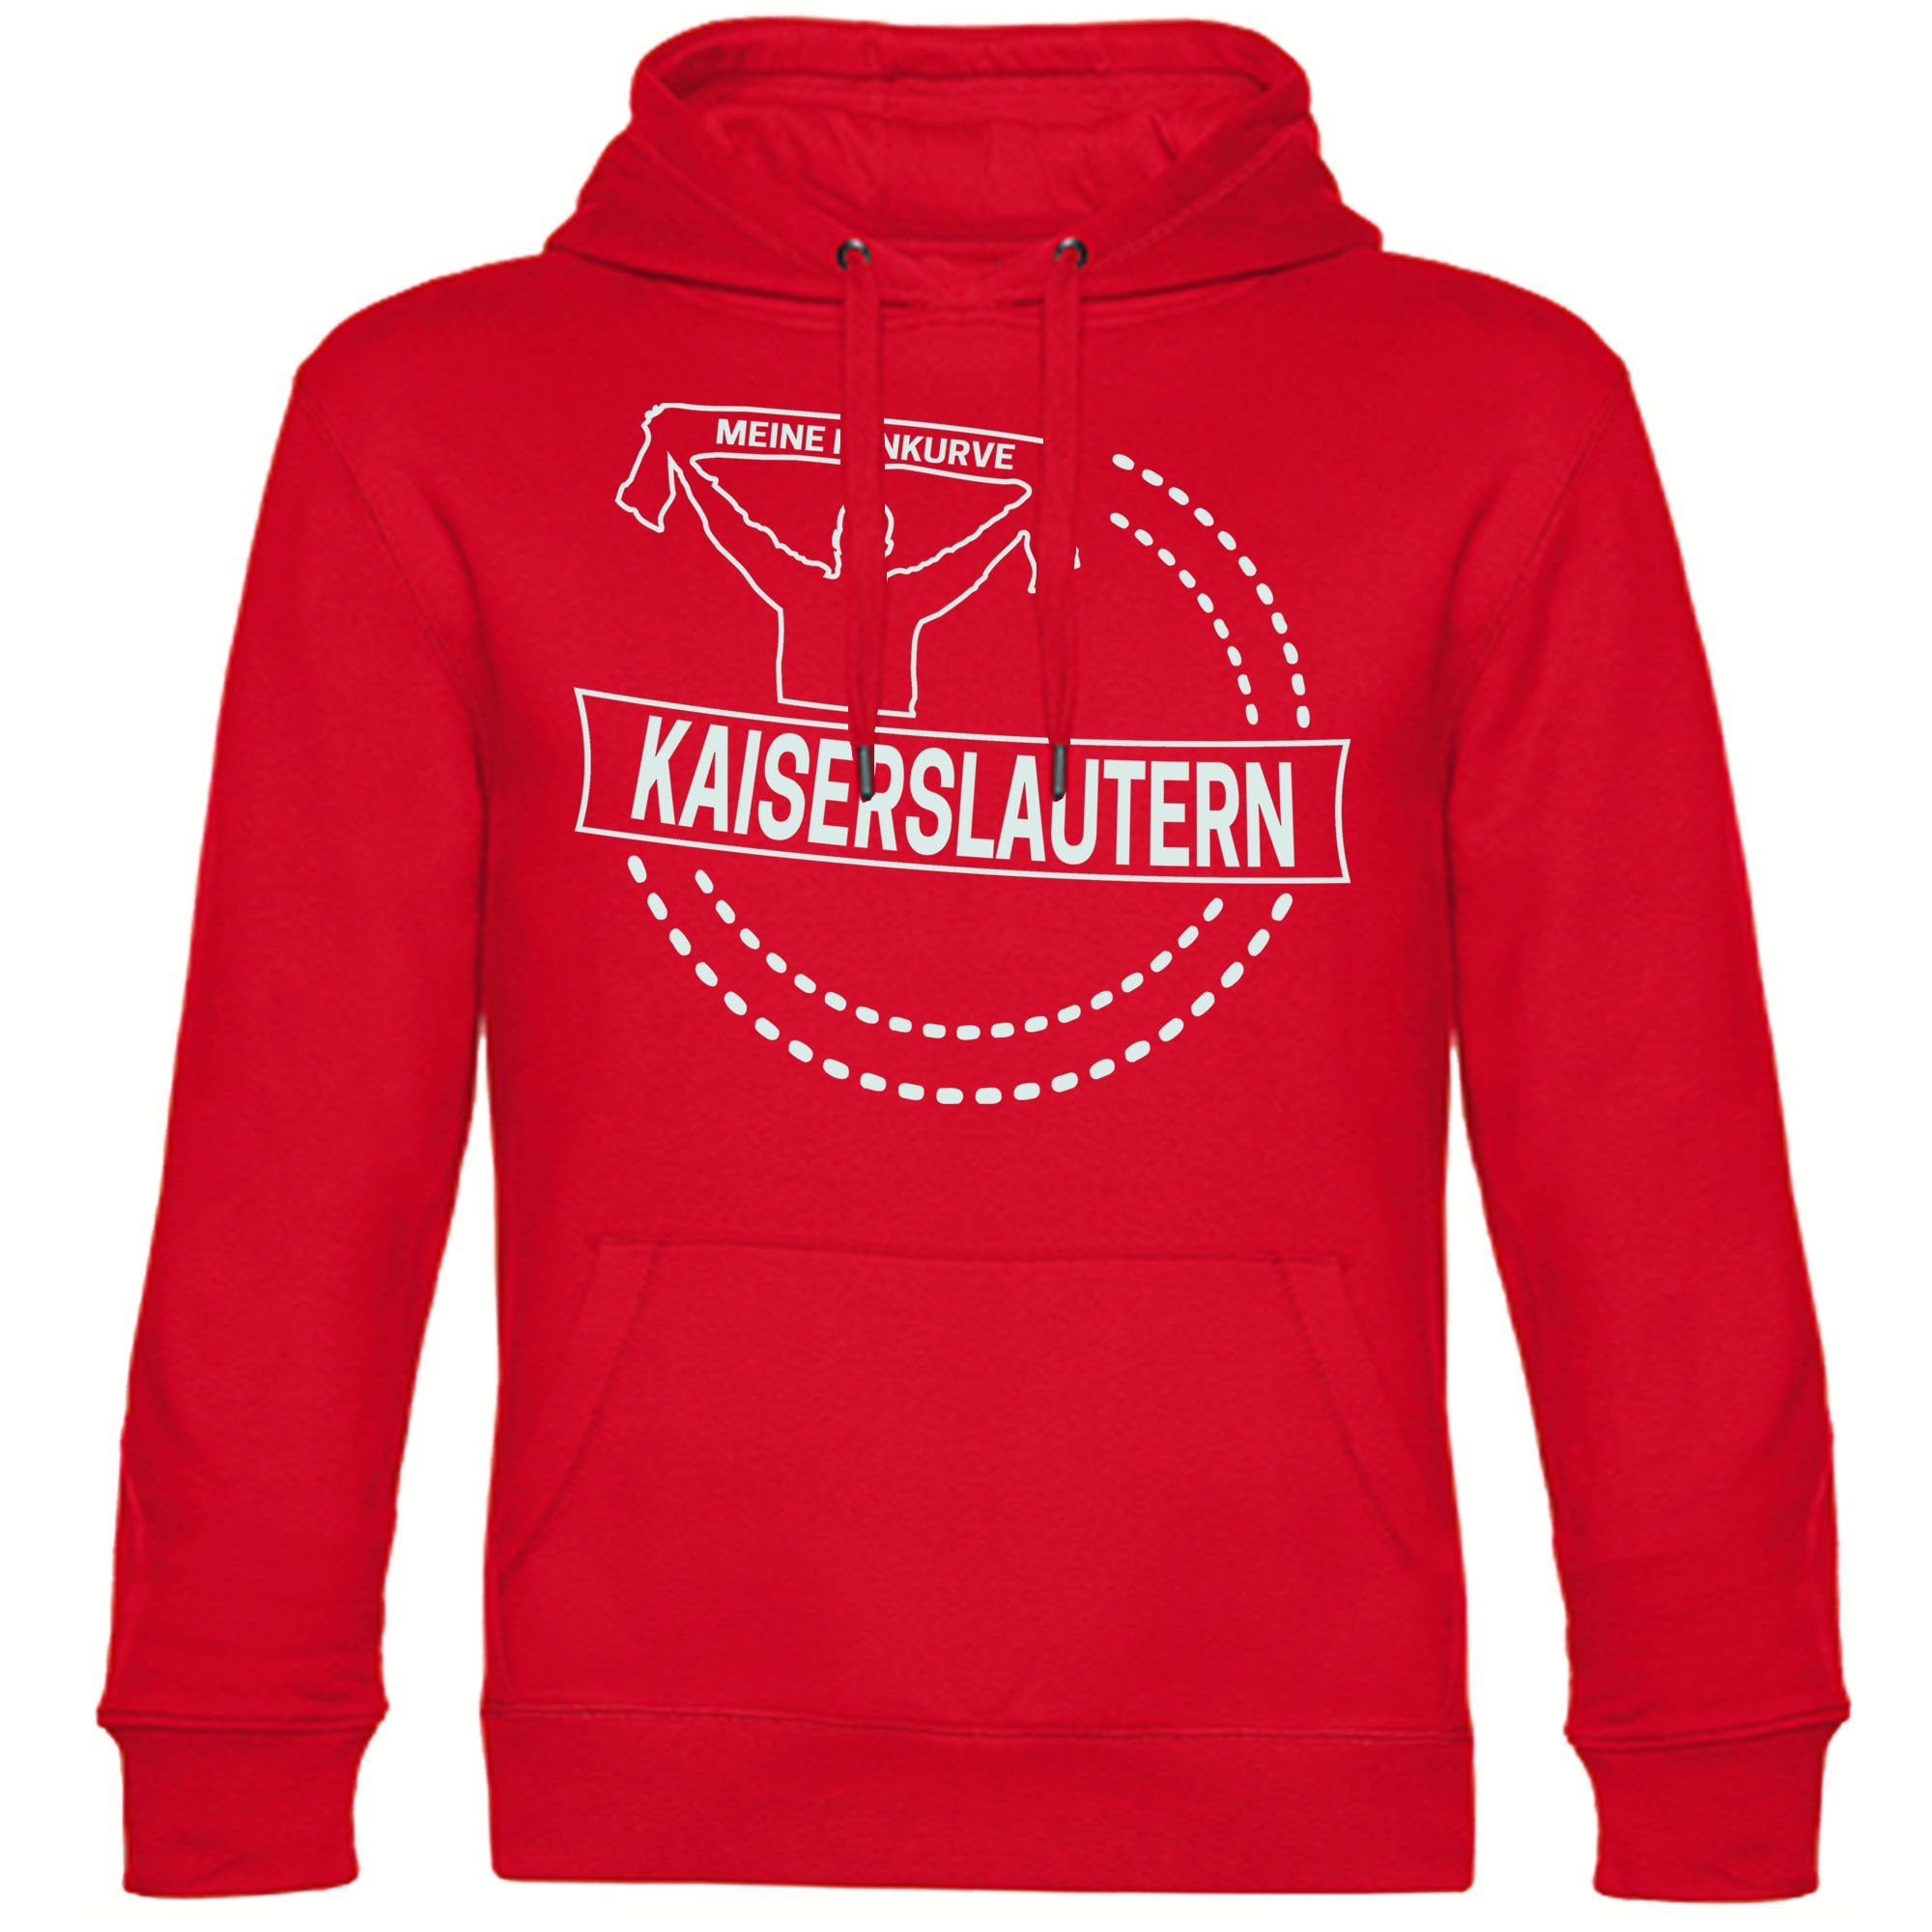 multifanshop Kapuzensweatshirt Kaiserslautern - Meine Fankurve - Pullover